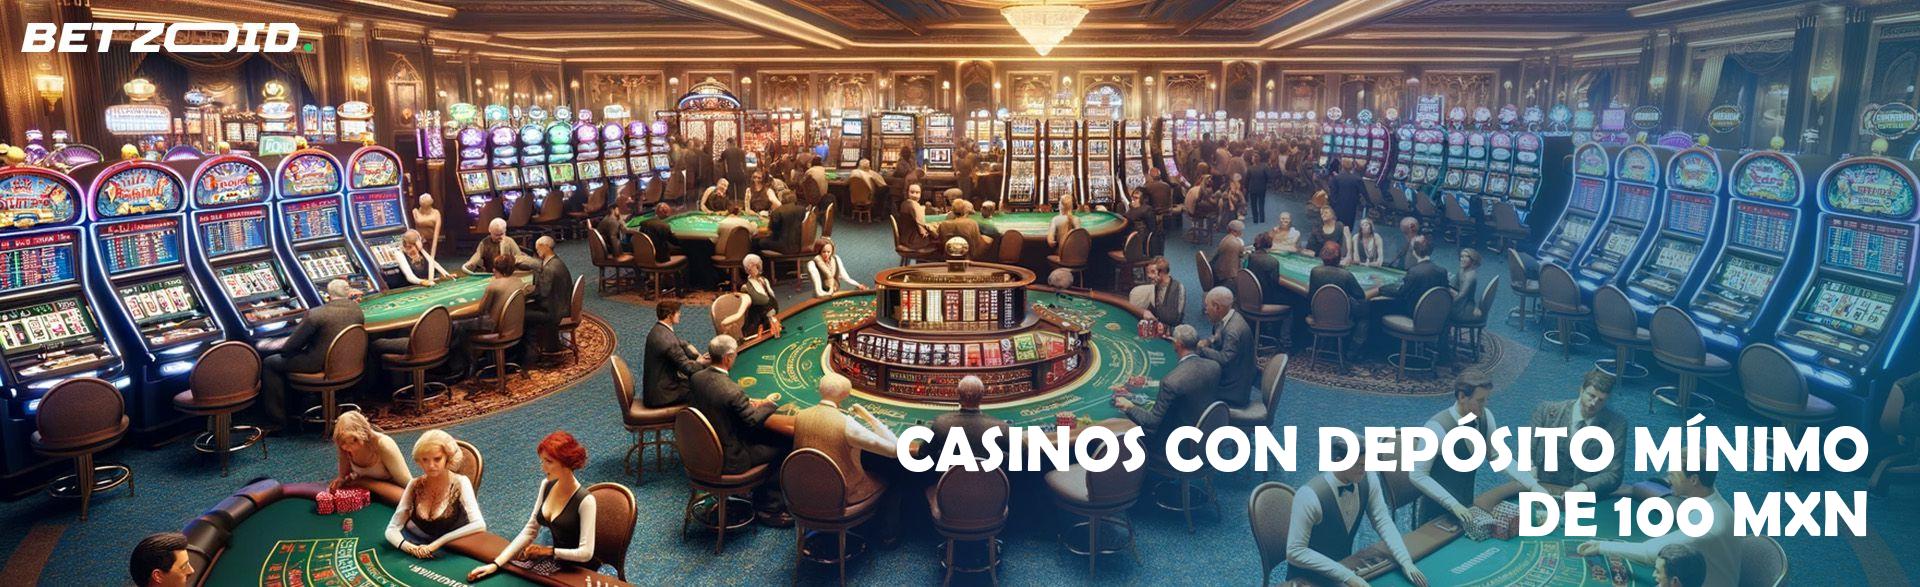 Casinos con Depósito Mínimo de 100 MXN.